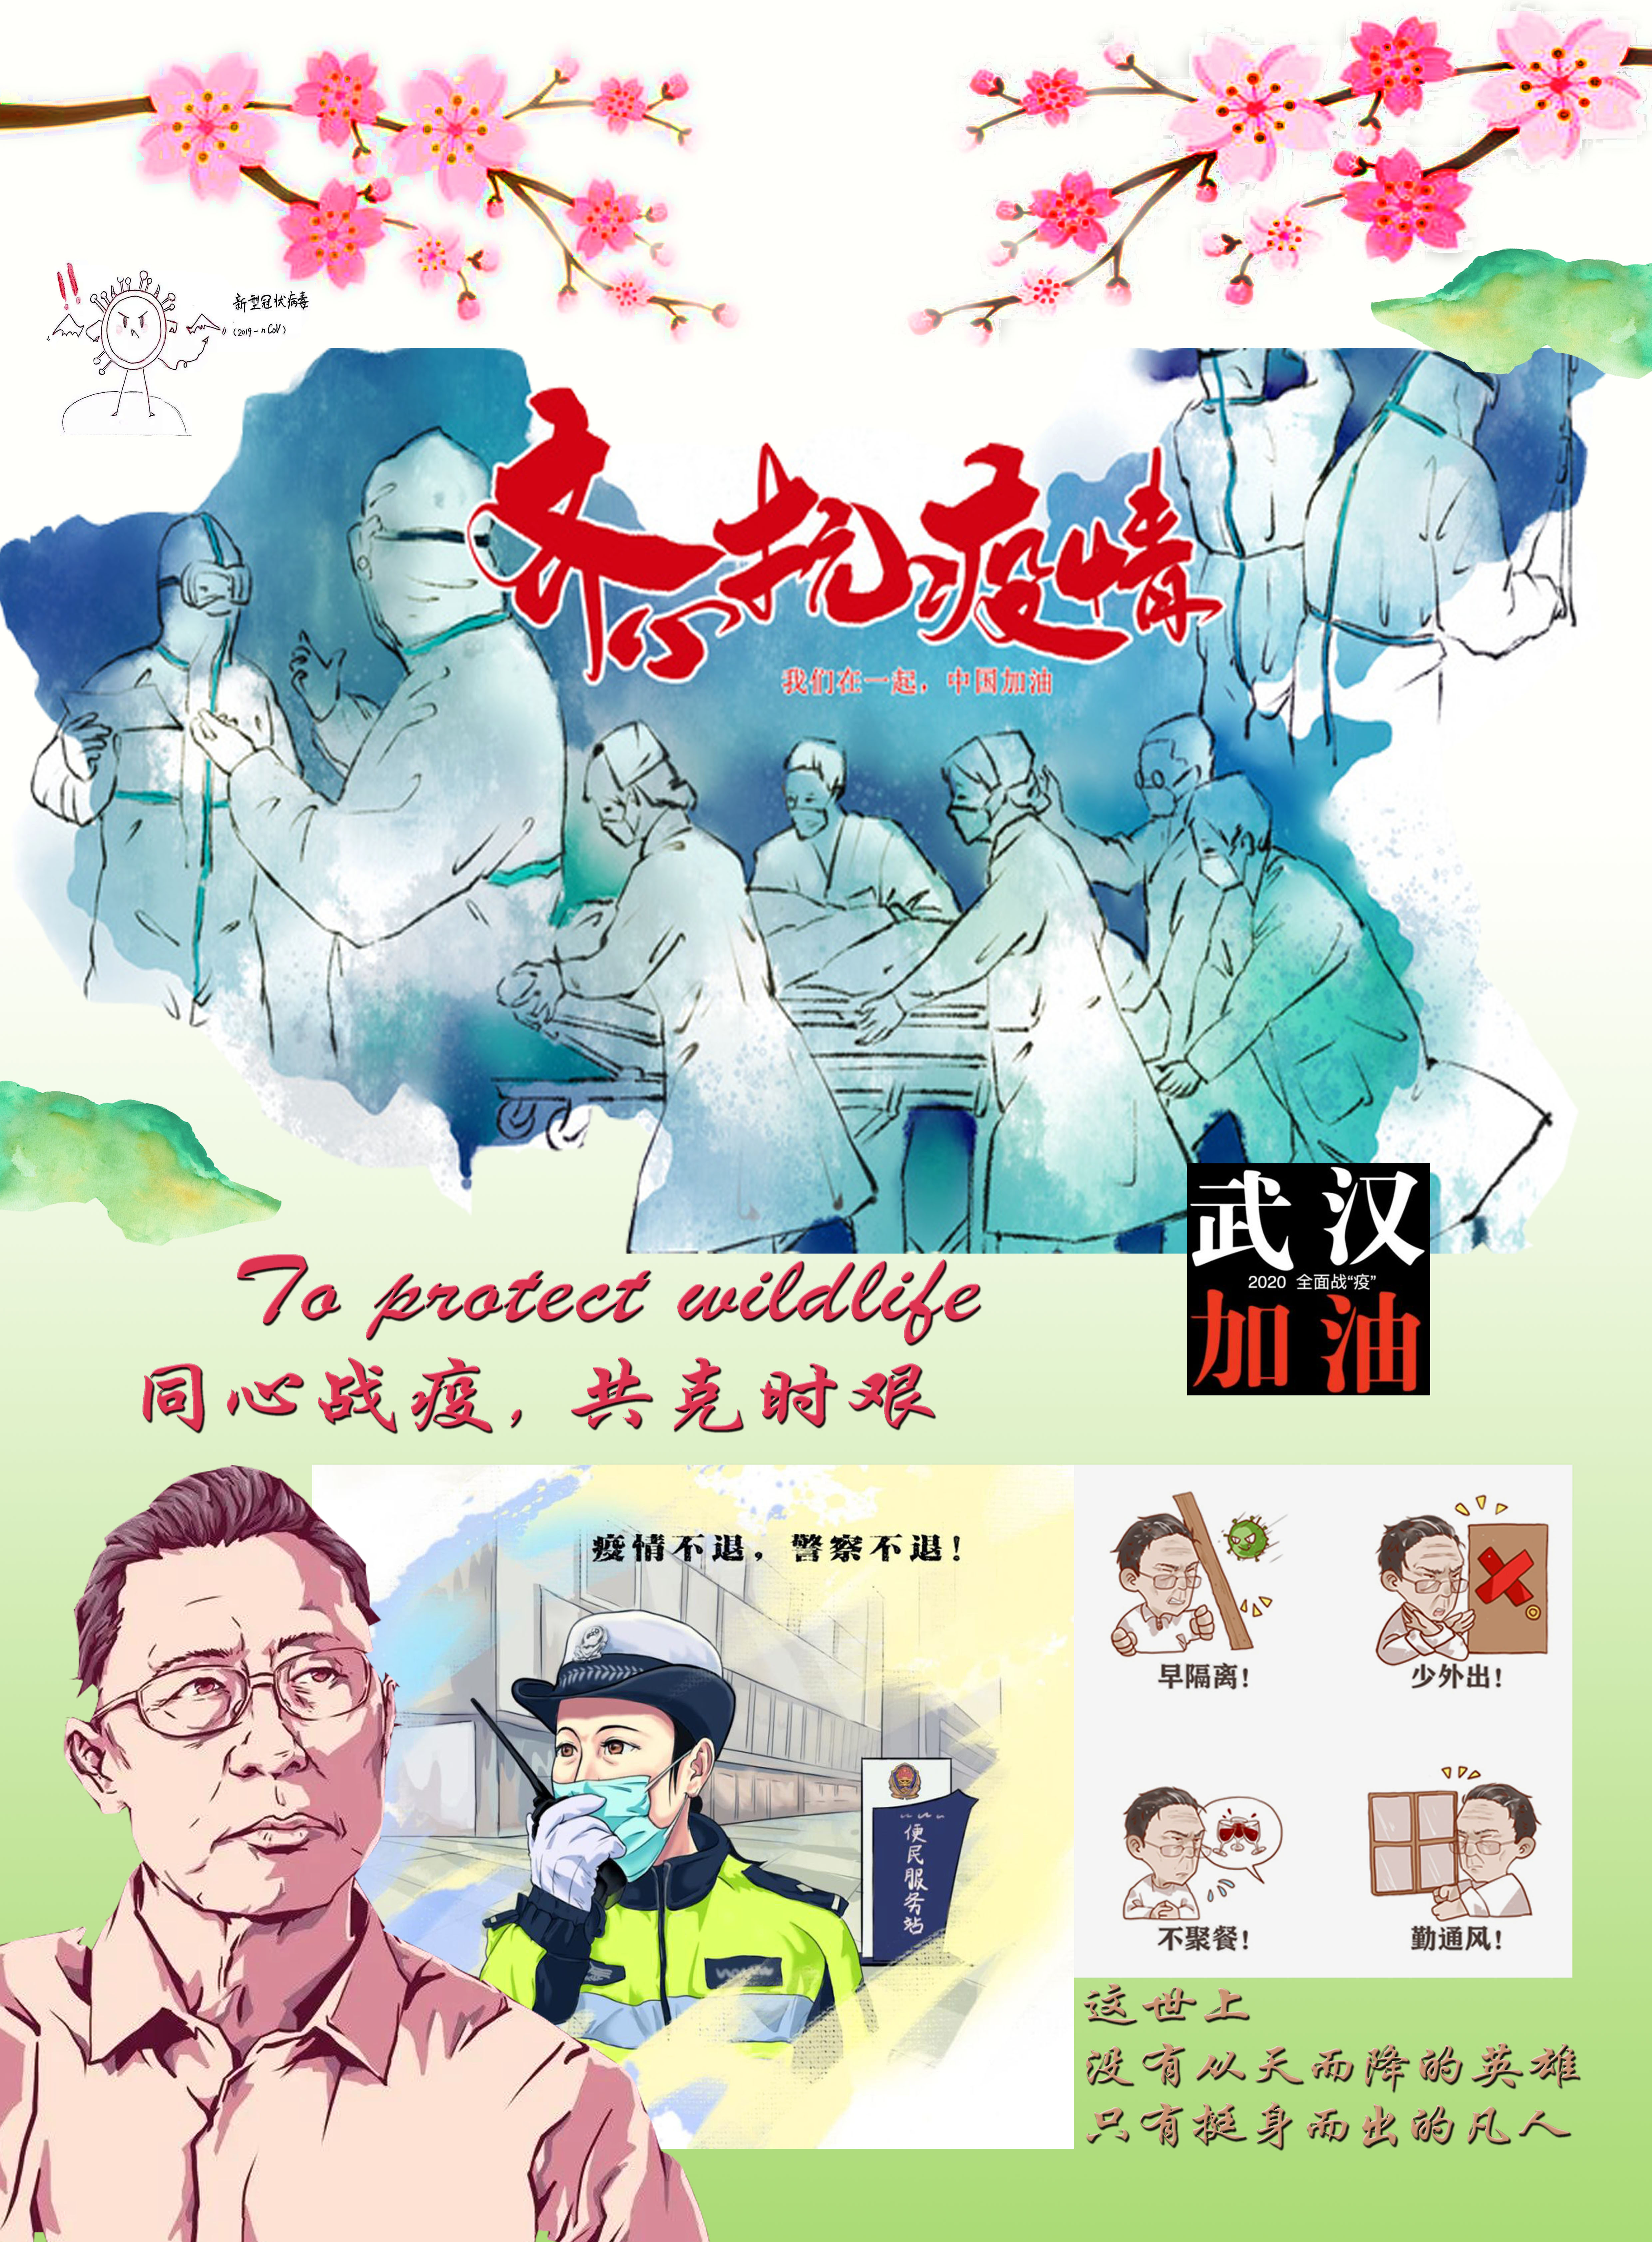 作者:外国语学院 杨彤海报的设计灵感主要来源于抗击疫情的医护人员